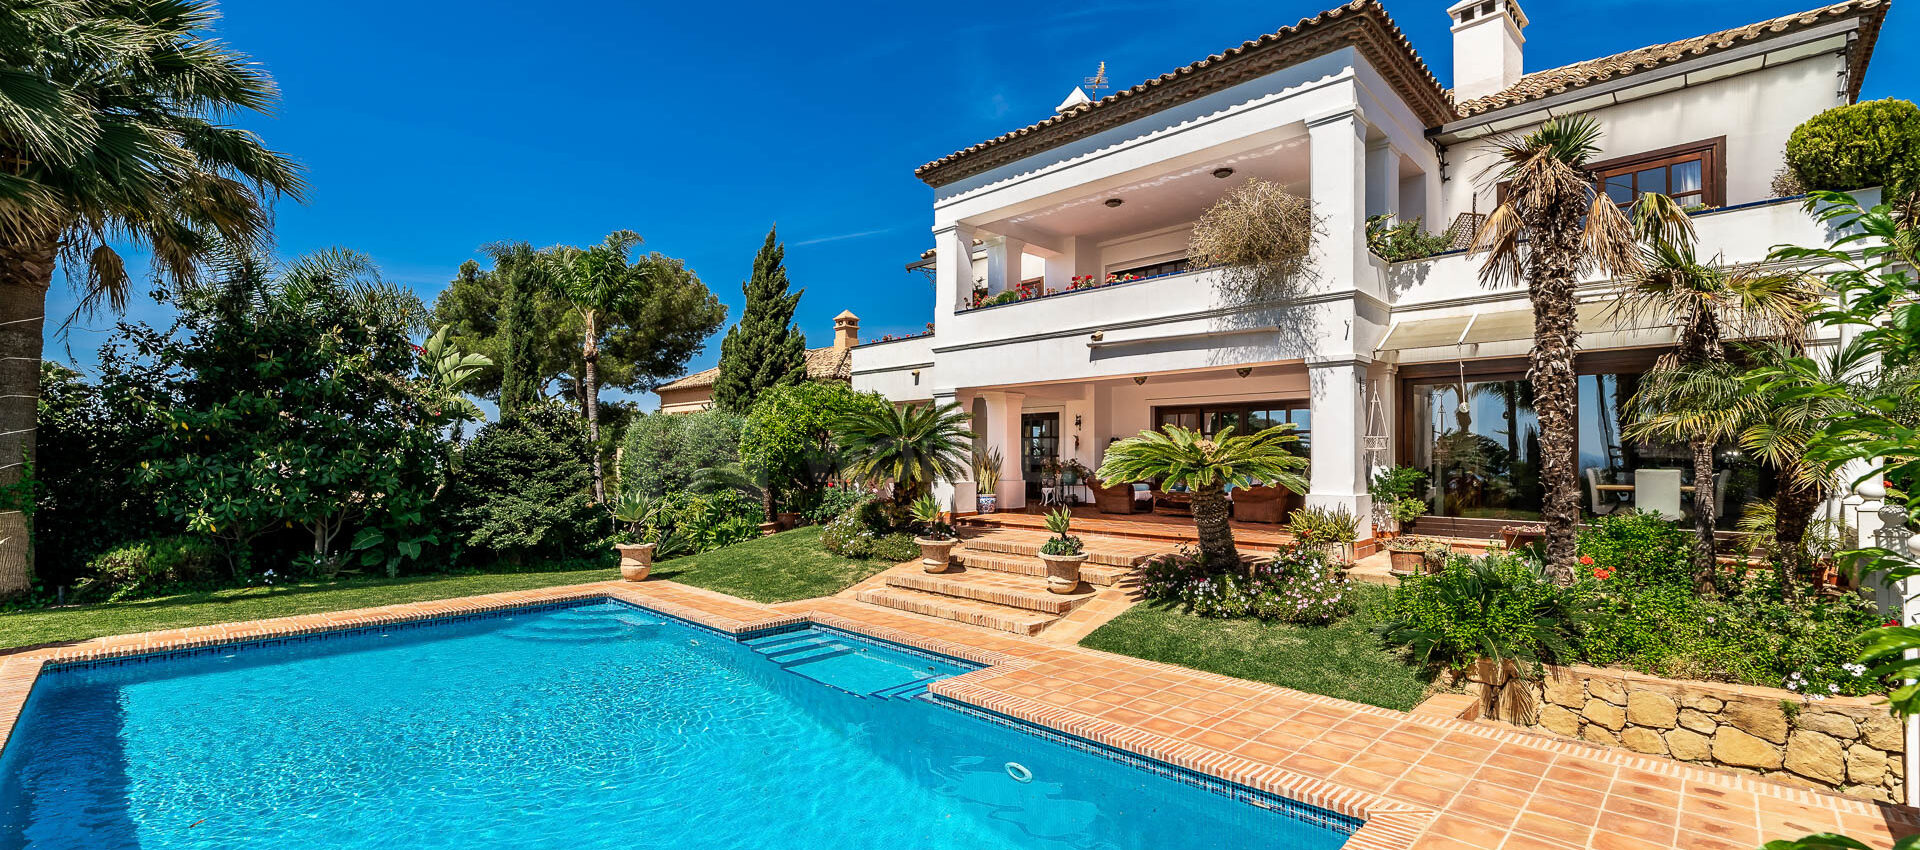 Exclusiva Villa con las mejores vistas al mar en Altos Reales Marbella